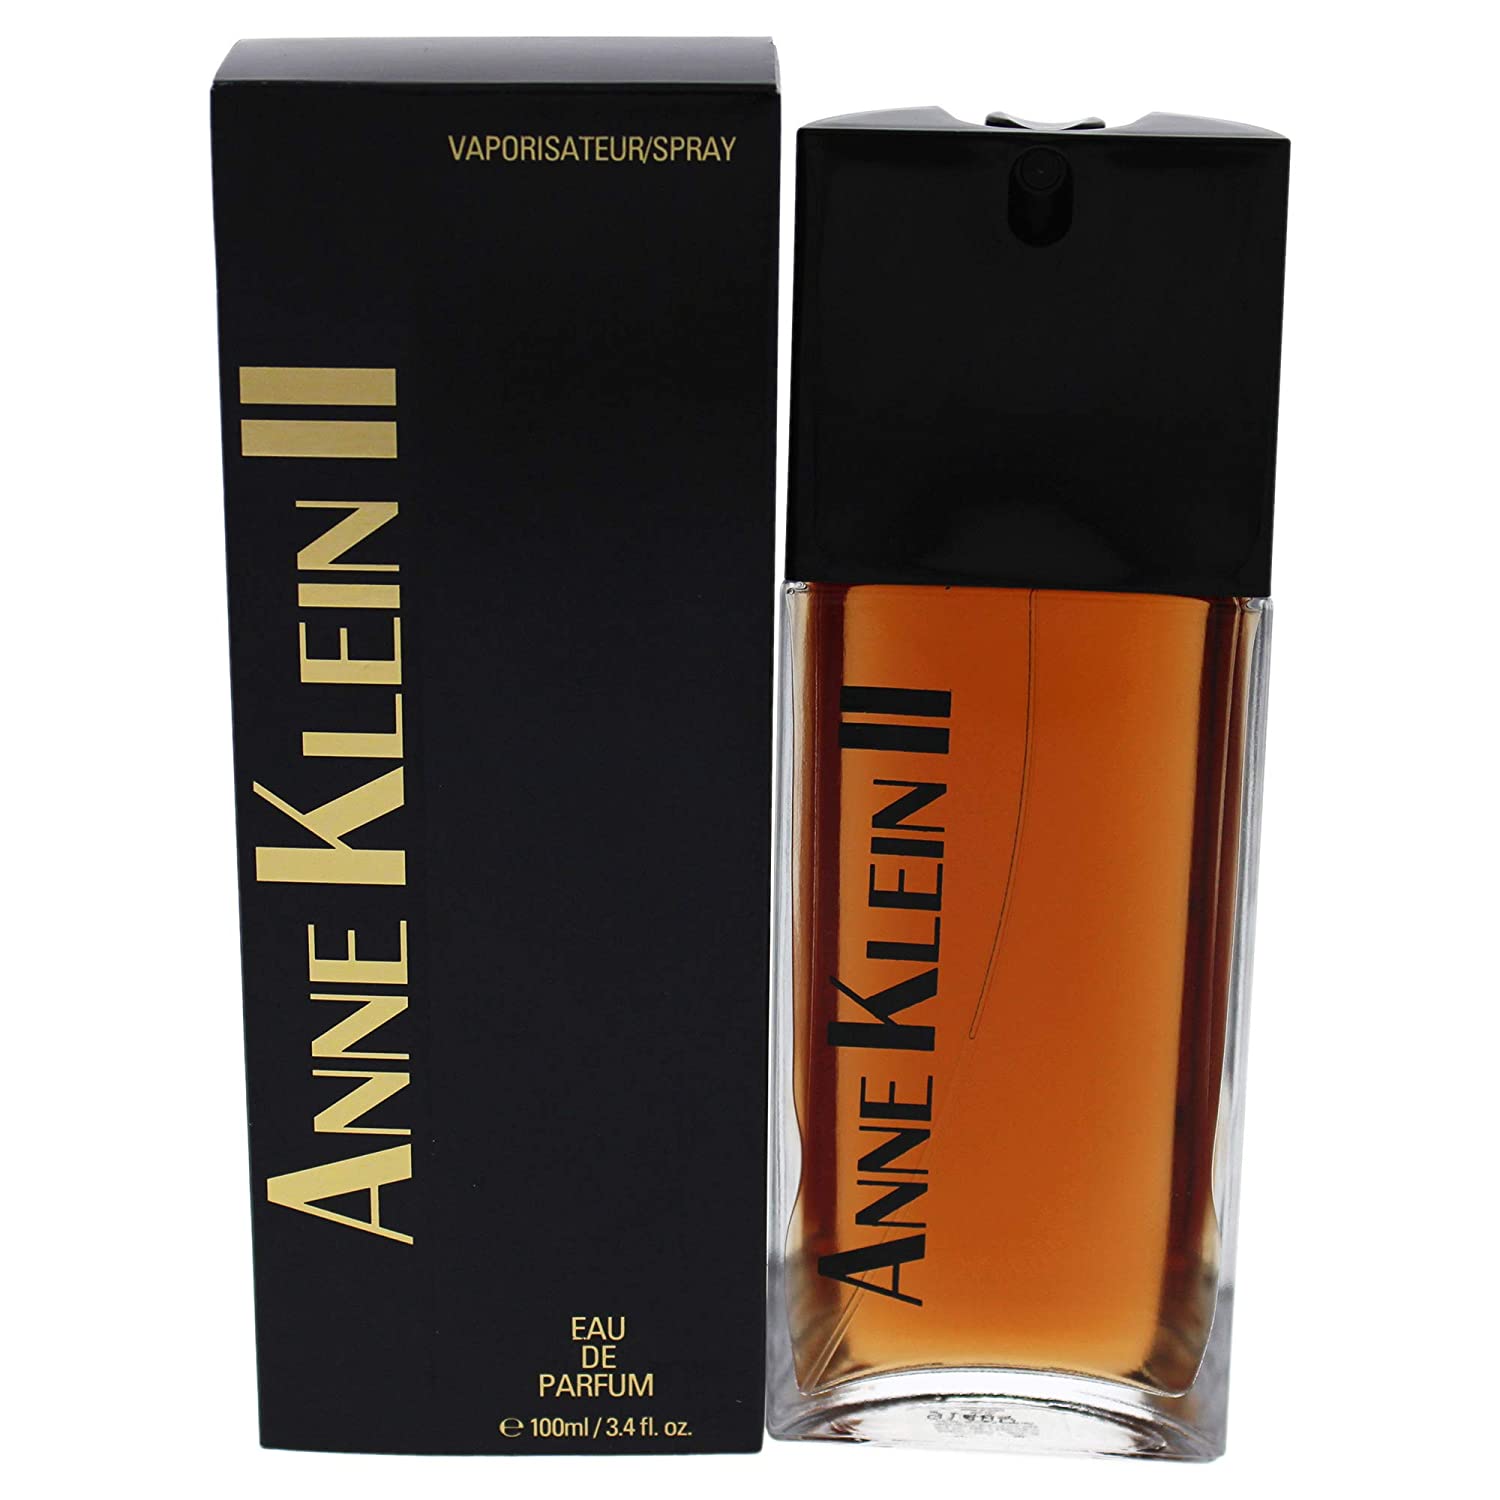 ANNE KLEIN - Eau de Parfum 3.4 fl. oz